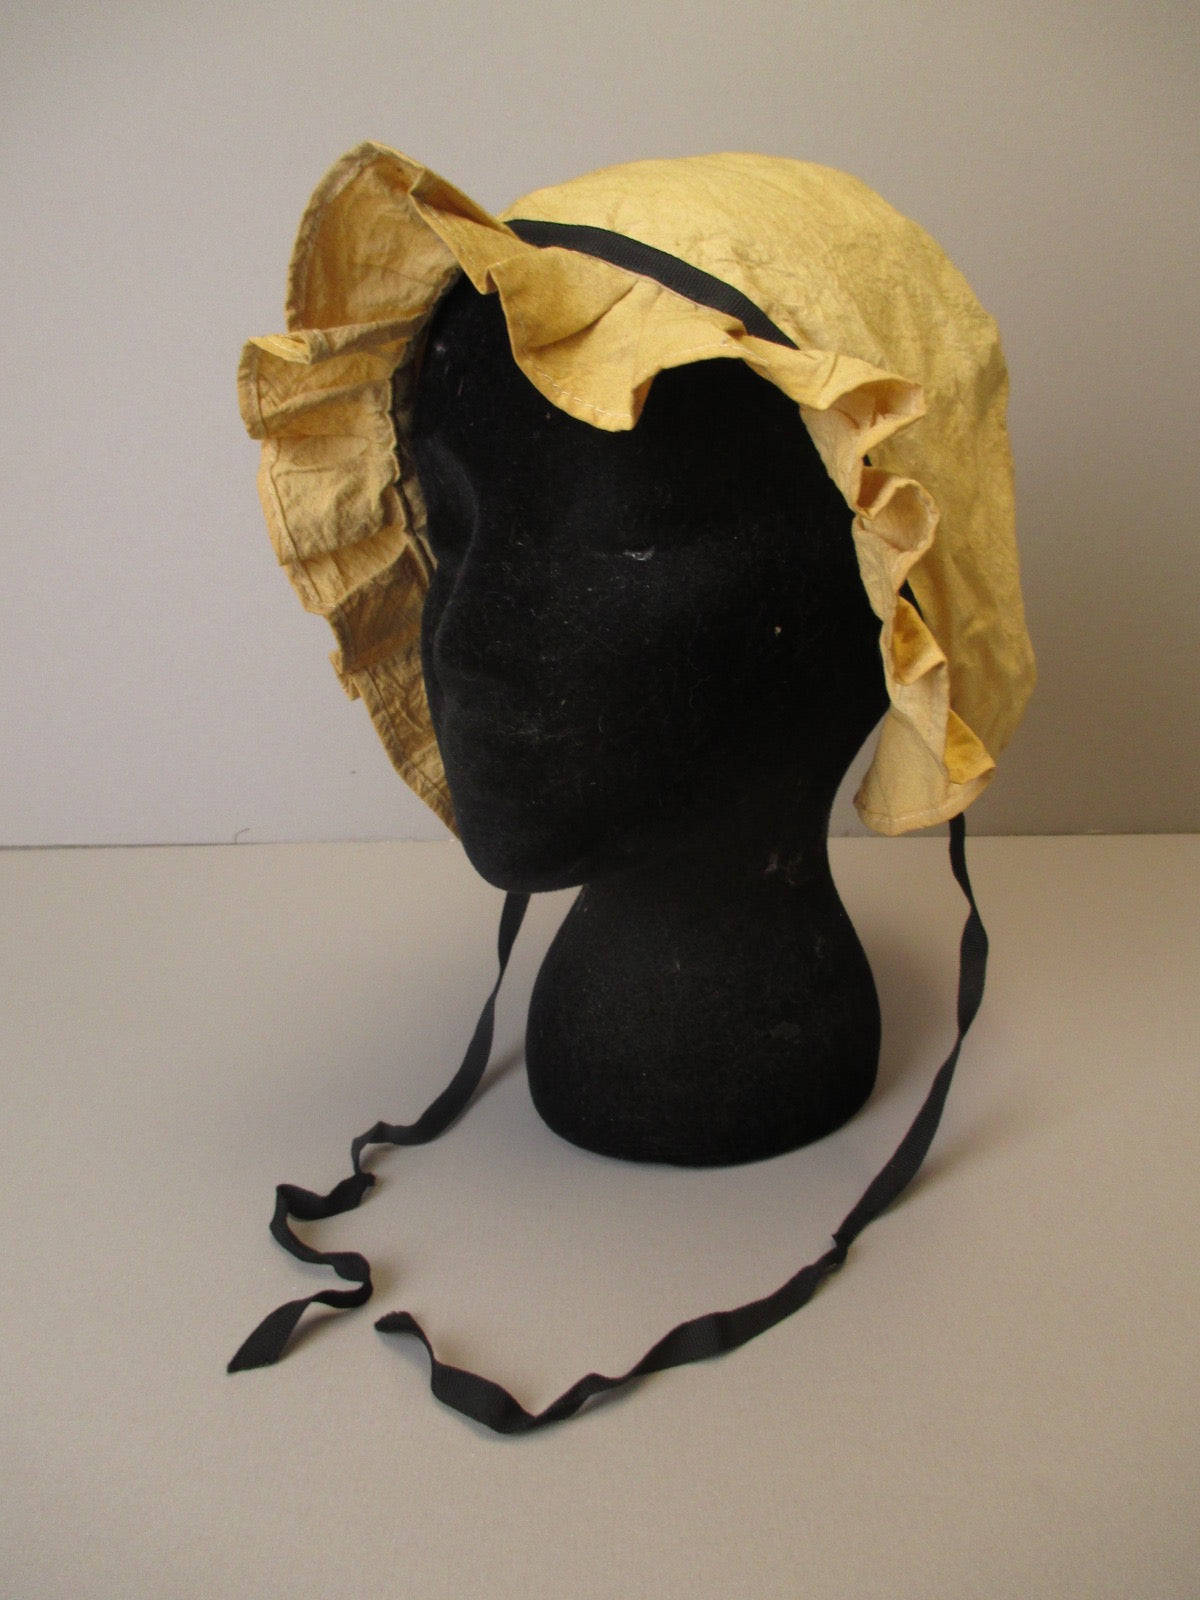 Vintage reproduction bonnet